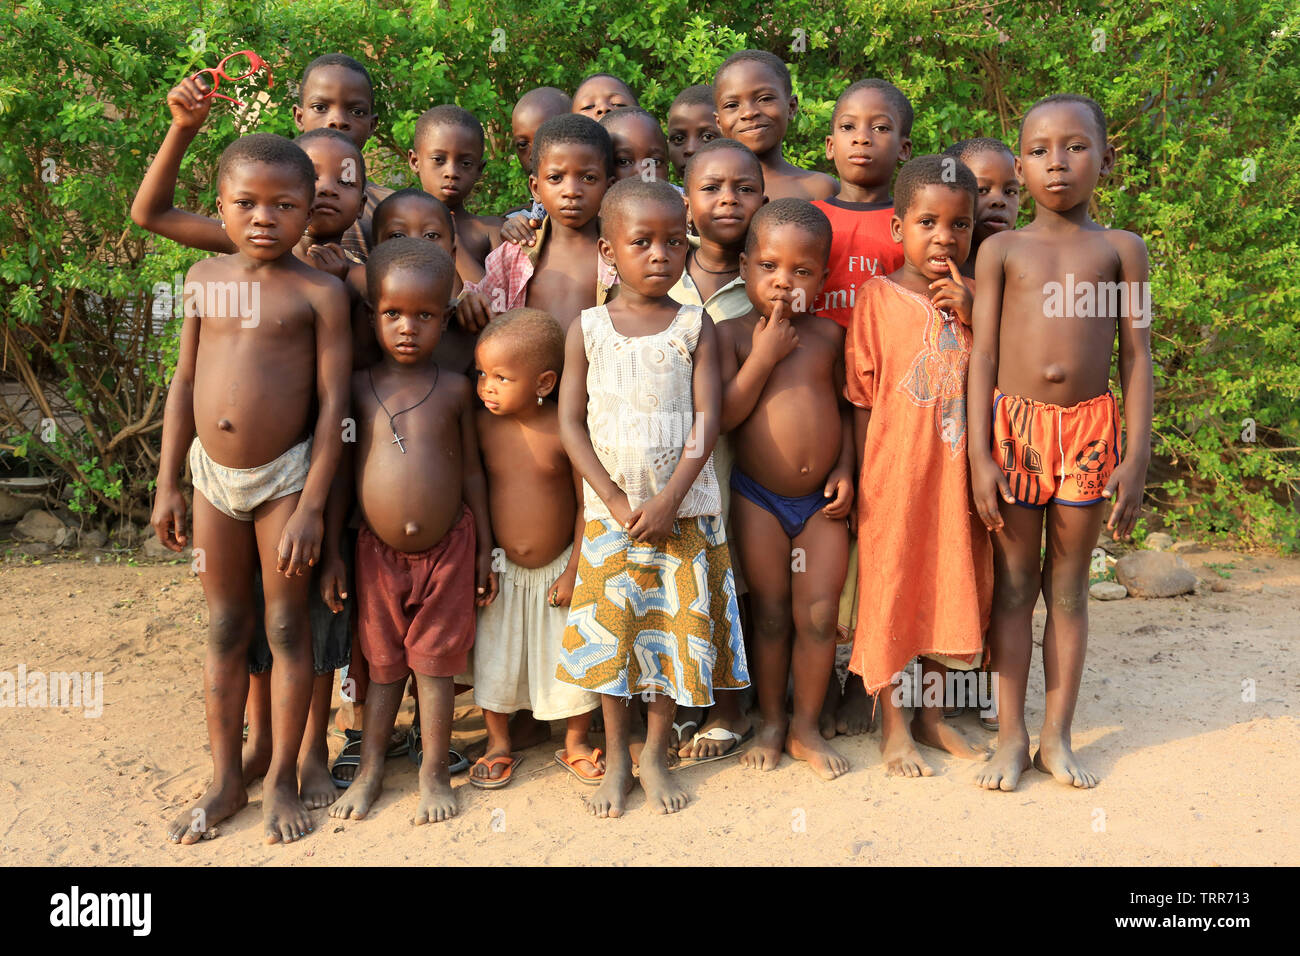 Groupe d'Enfants Togolais. Datscha. Togo. Afrique de l'Ouest. Stockfoto